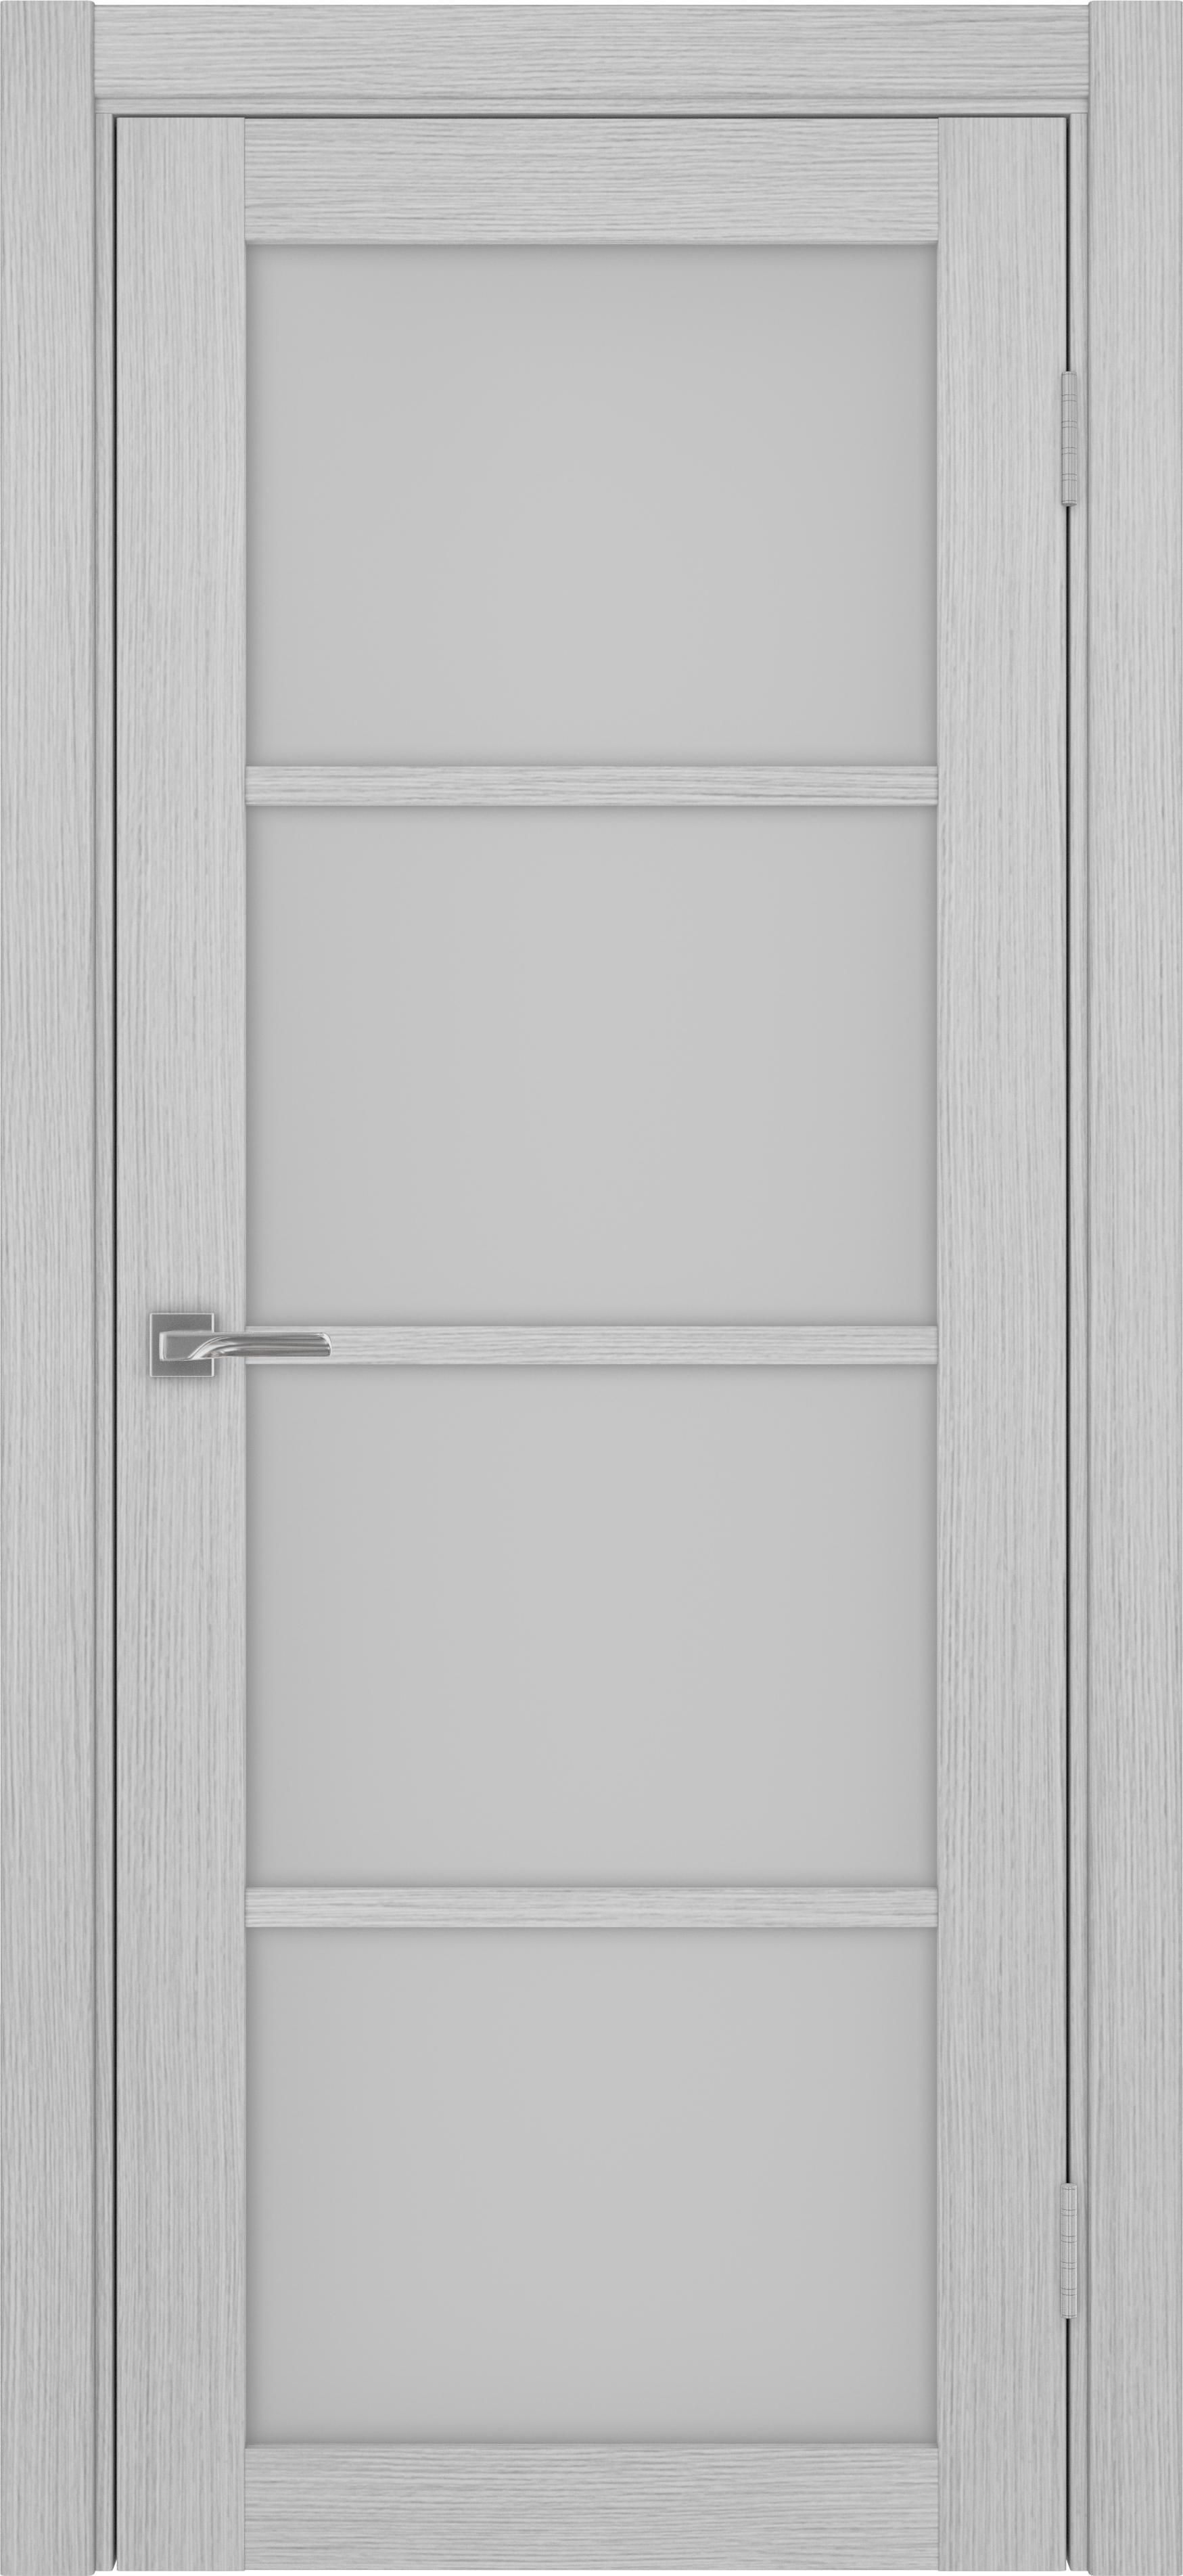 Межкомнатная дверь «Турин 540.2222 Дуб серый» стекло сатин